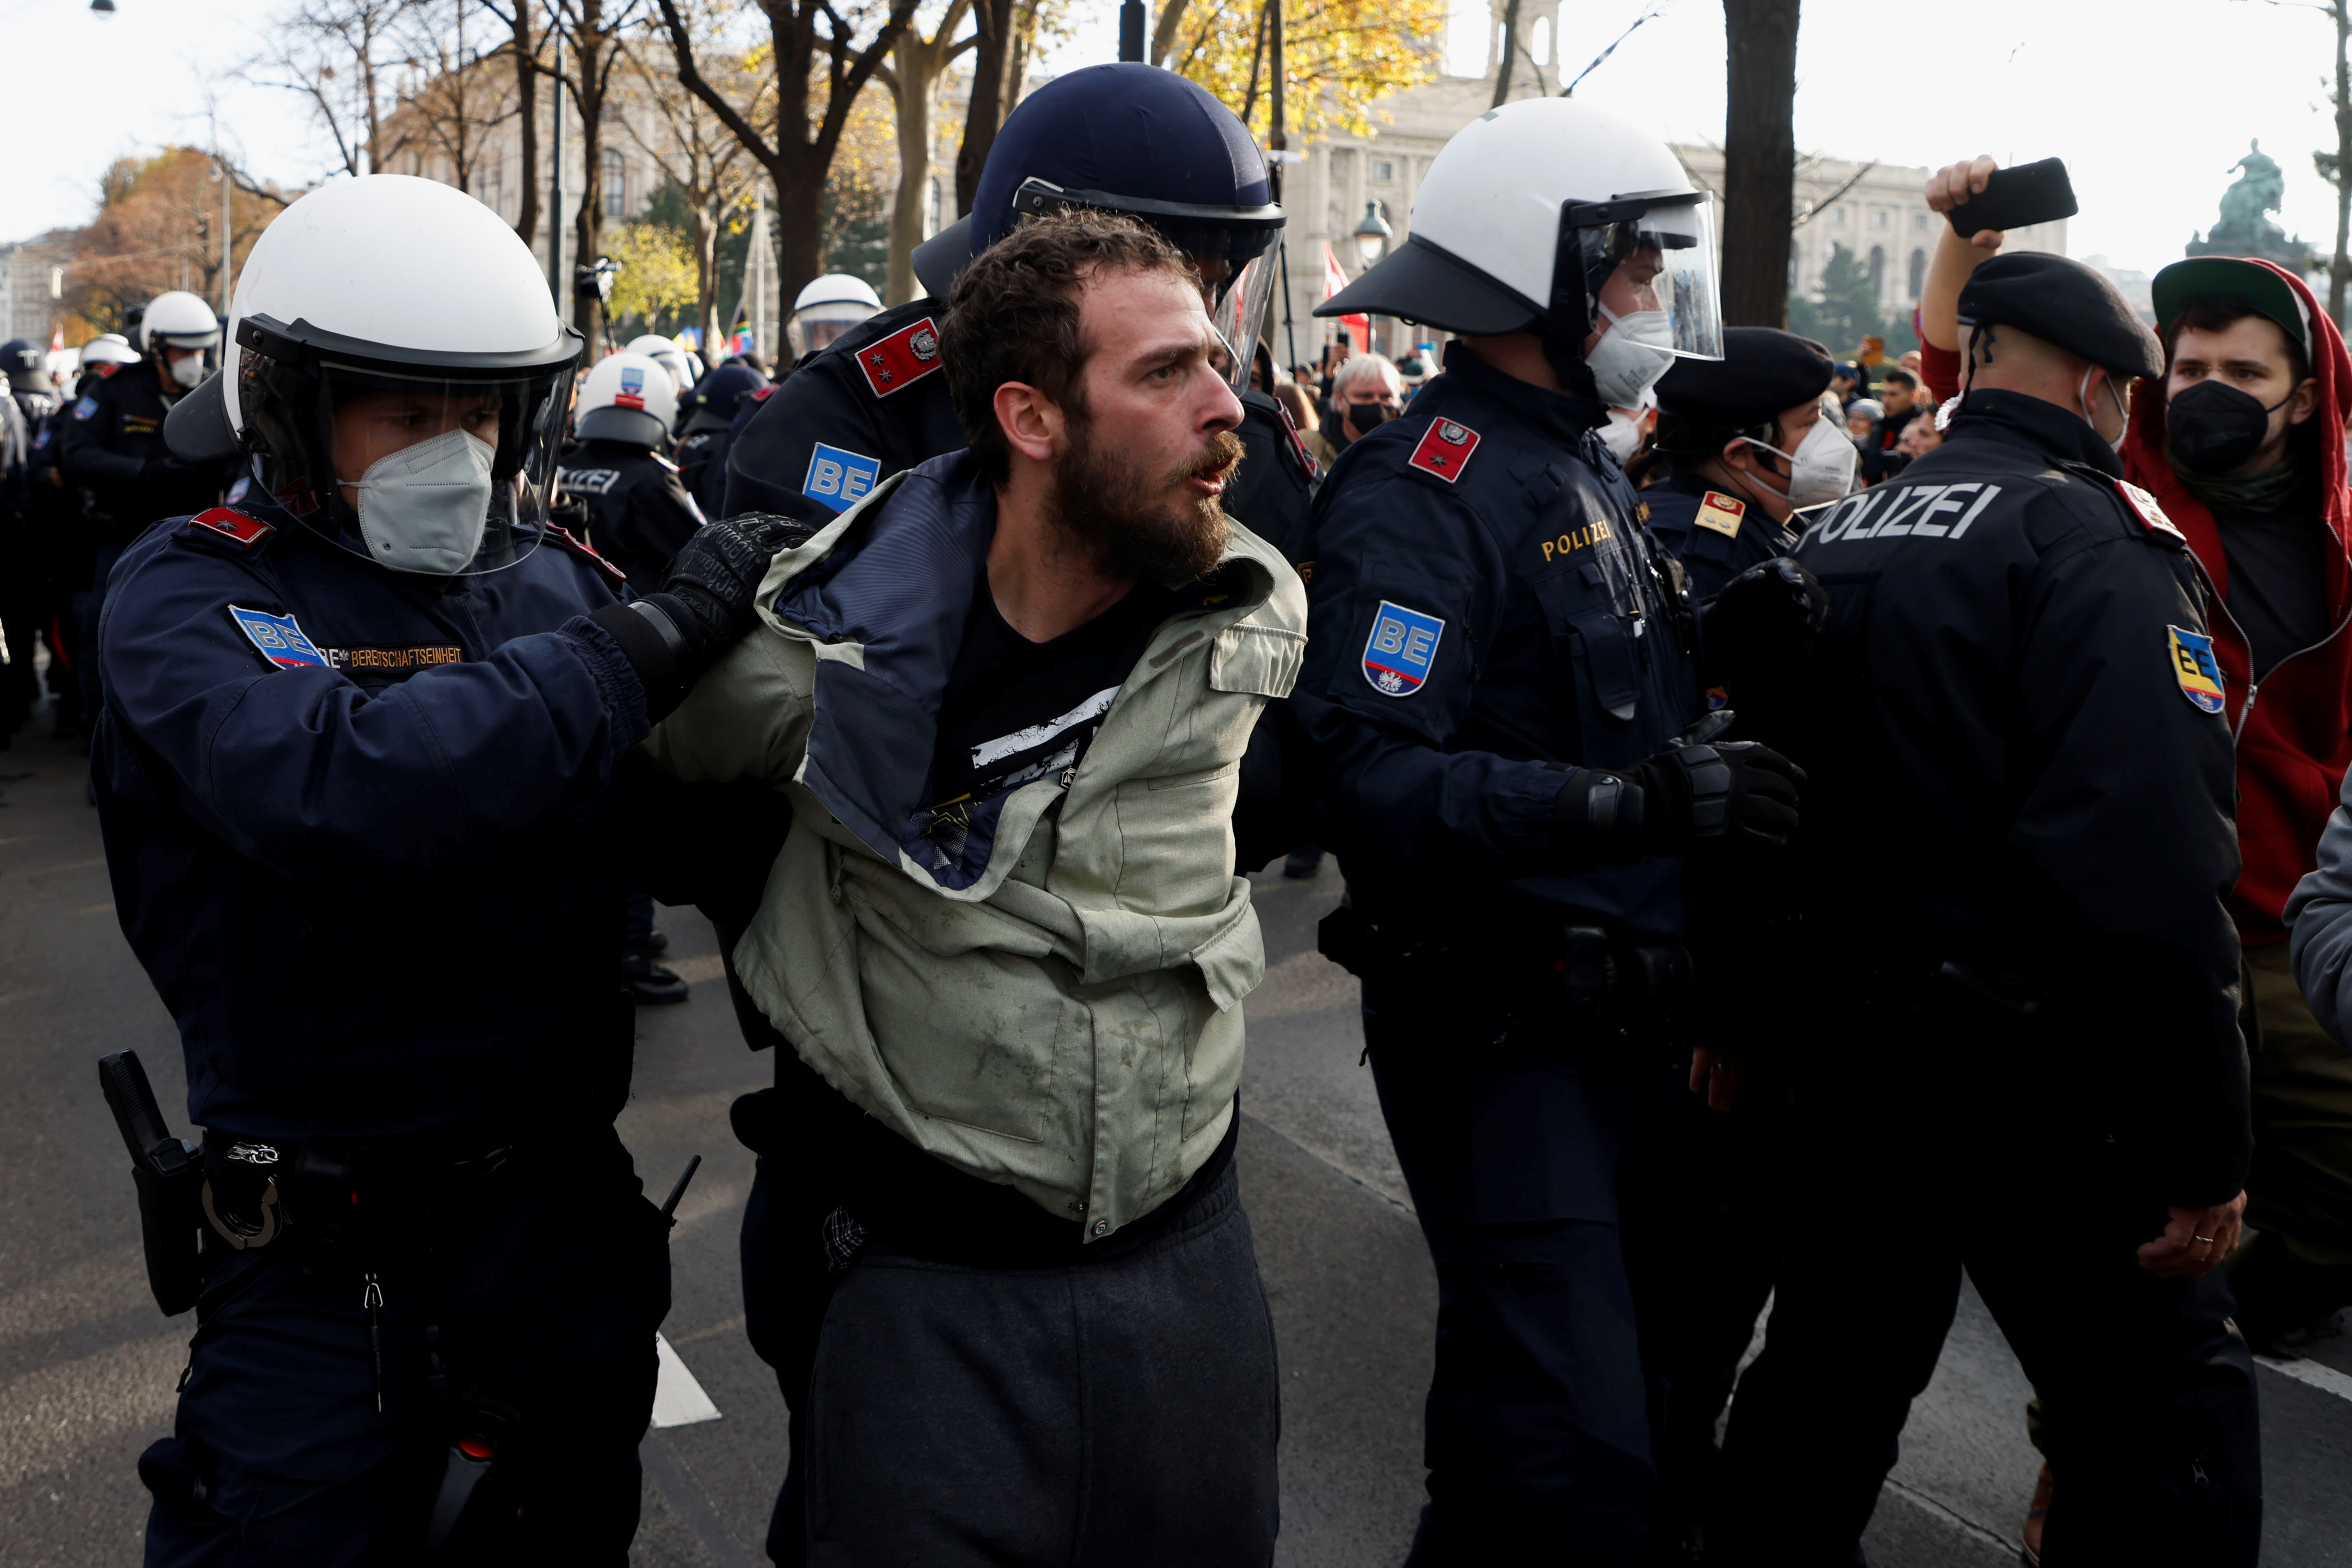 Policajci su zadržali prosvjednika tijekom prosvjeda protiv mjera protiv korona virusa (COVID-19) u Beču, Austrija, 20. studenog 2021. REUTERS/Leonhard Foeger